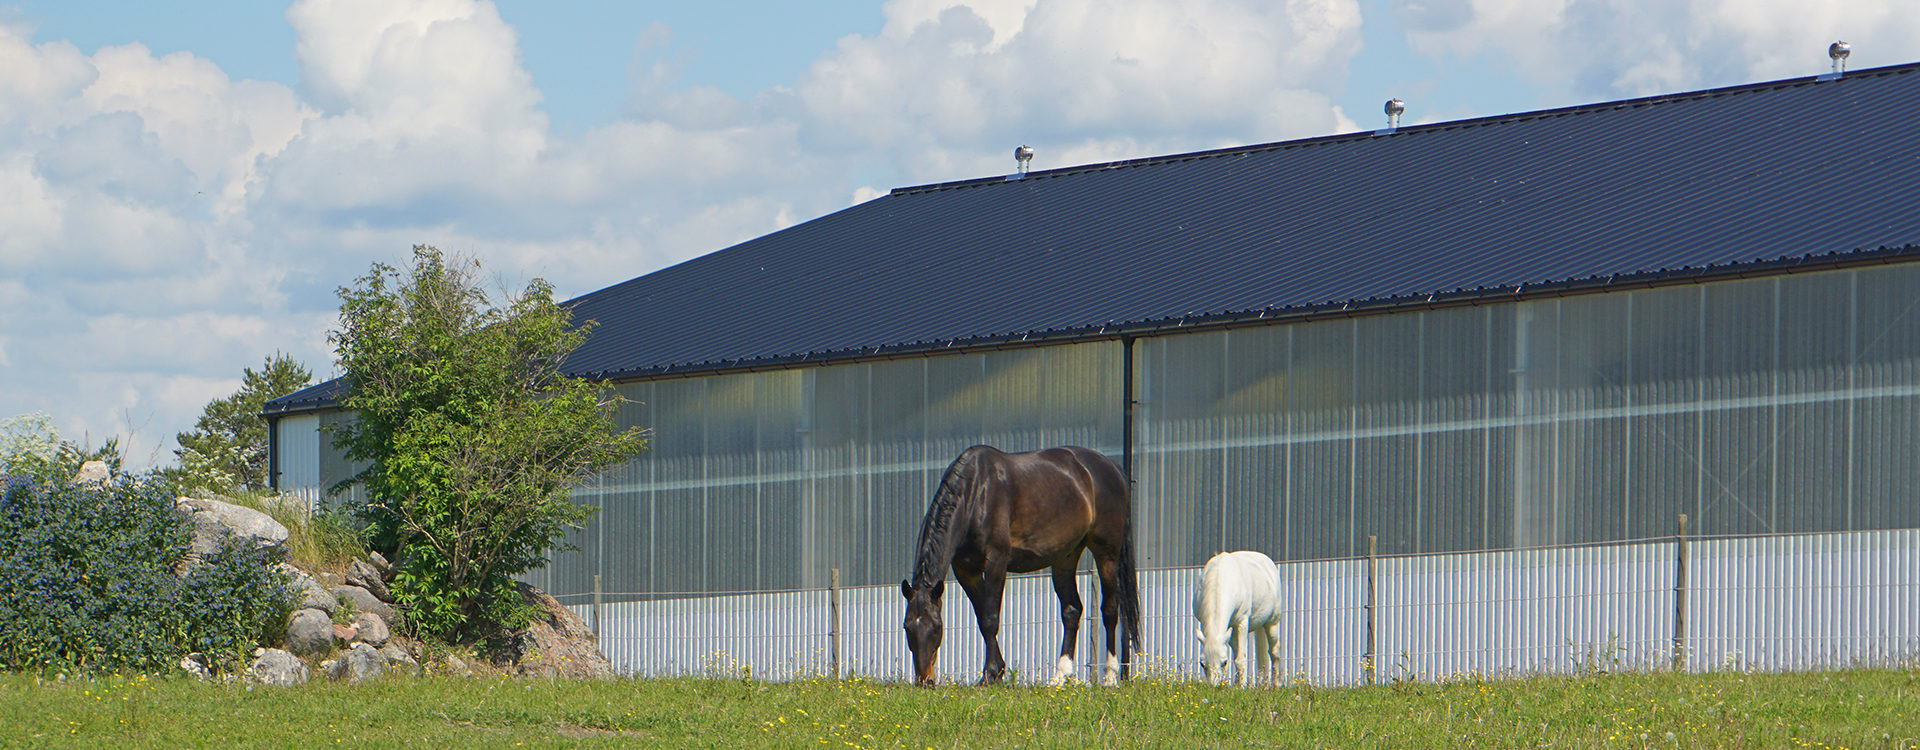  Equestrian steel buildings | BORGA